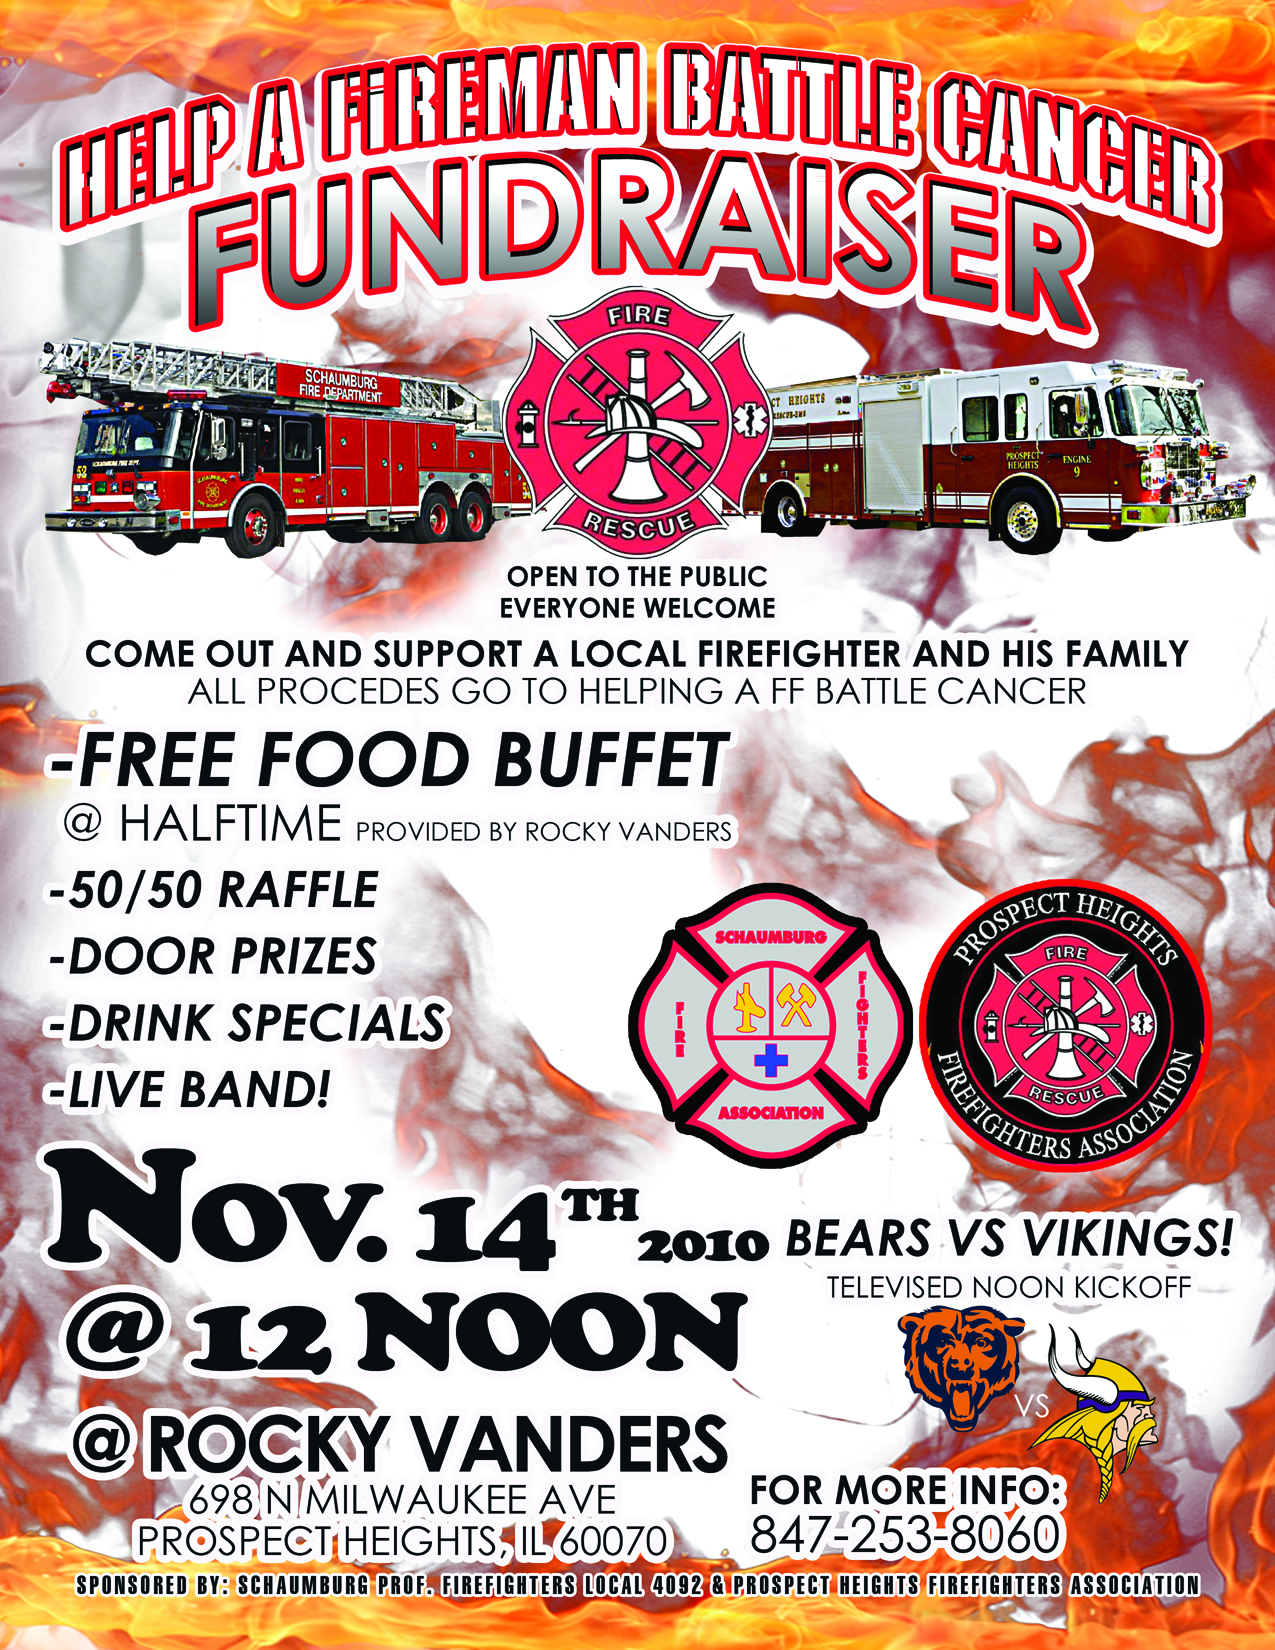 Firefighter fundraiser